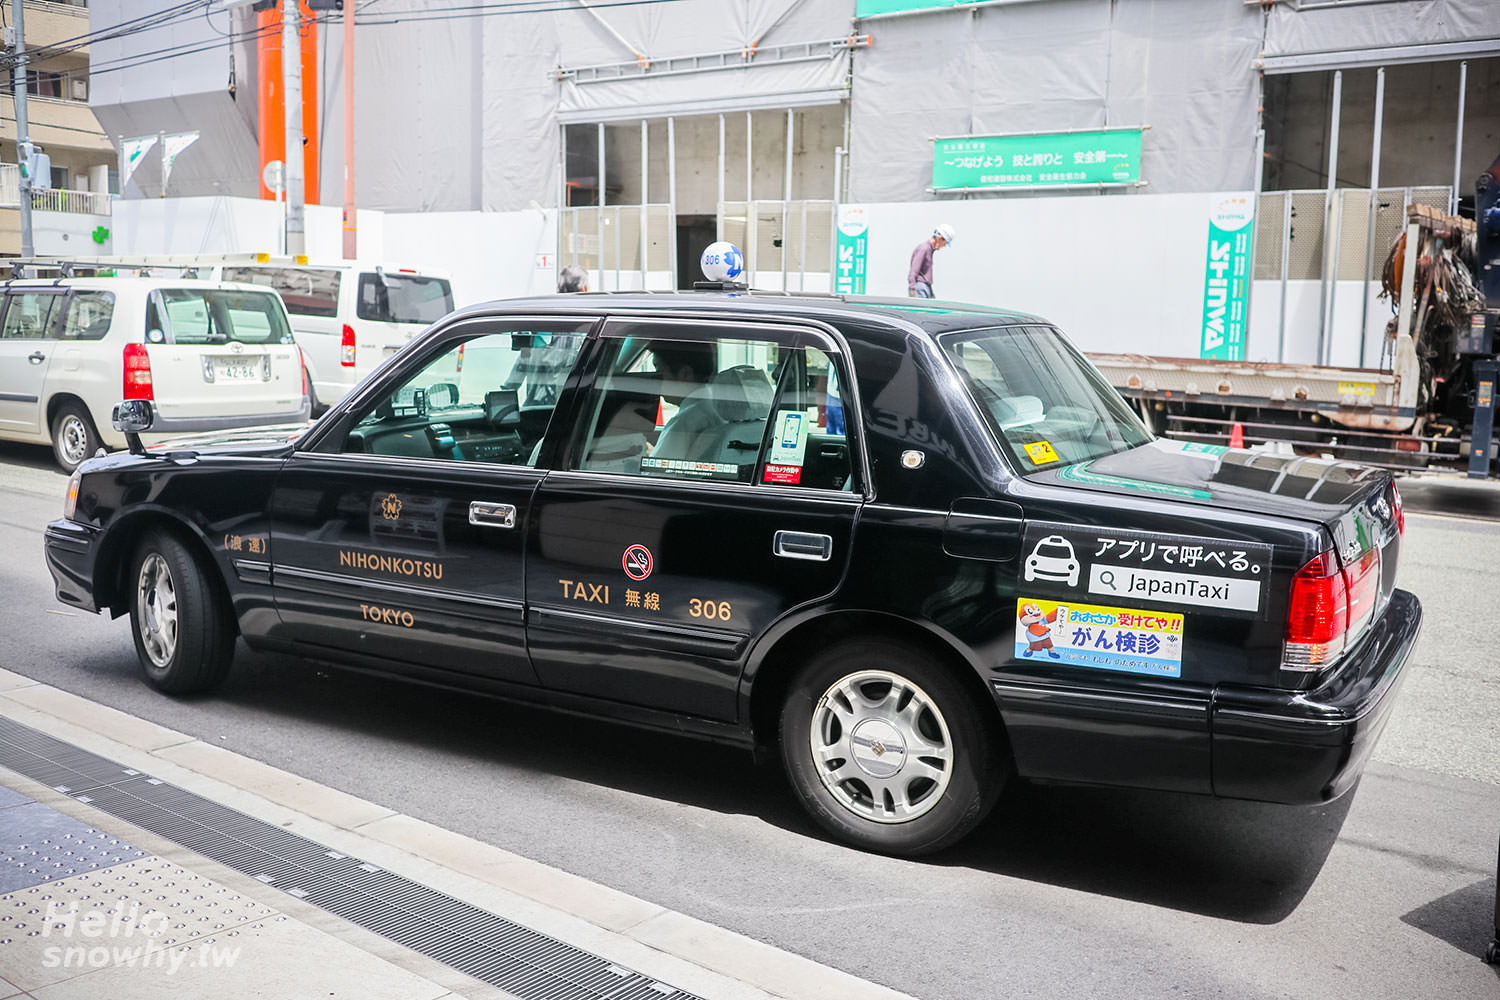 Japan Taxi,日本免費叫計程車APP,日本線上叫車,日本叫車APP,下載教學,日本免費叫車,日本交通